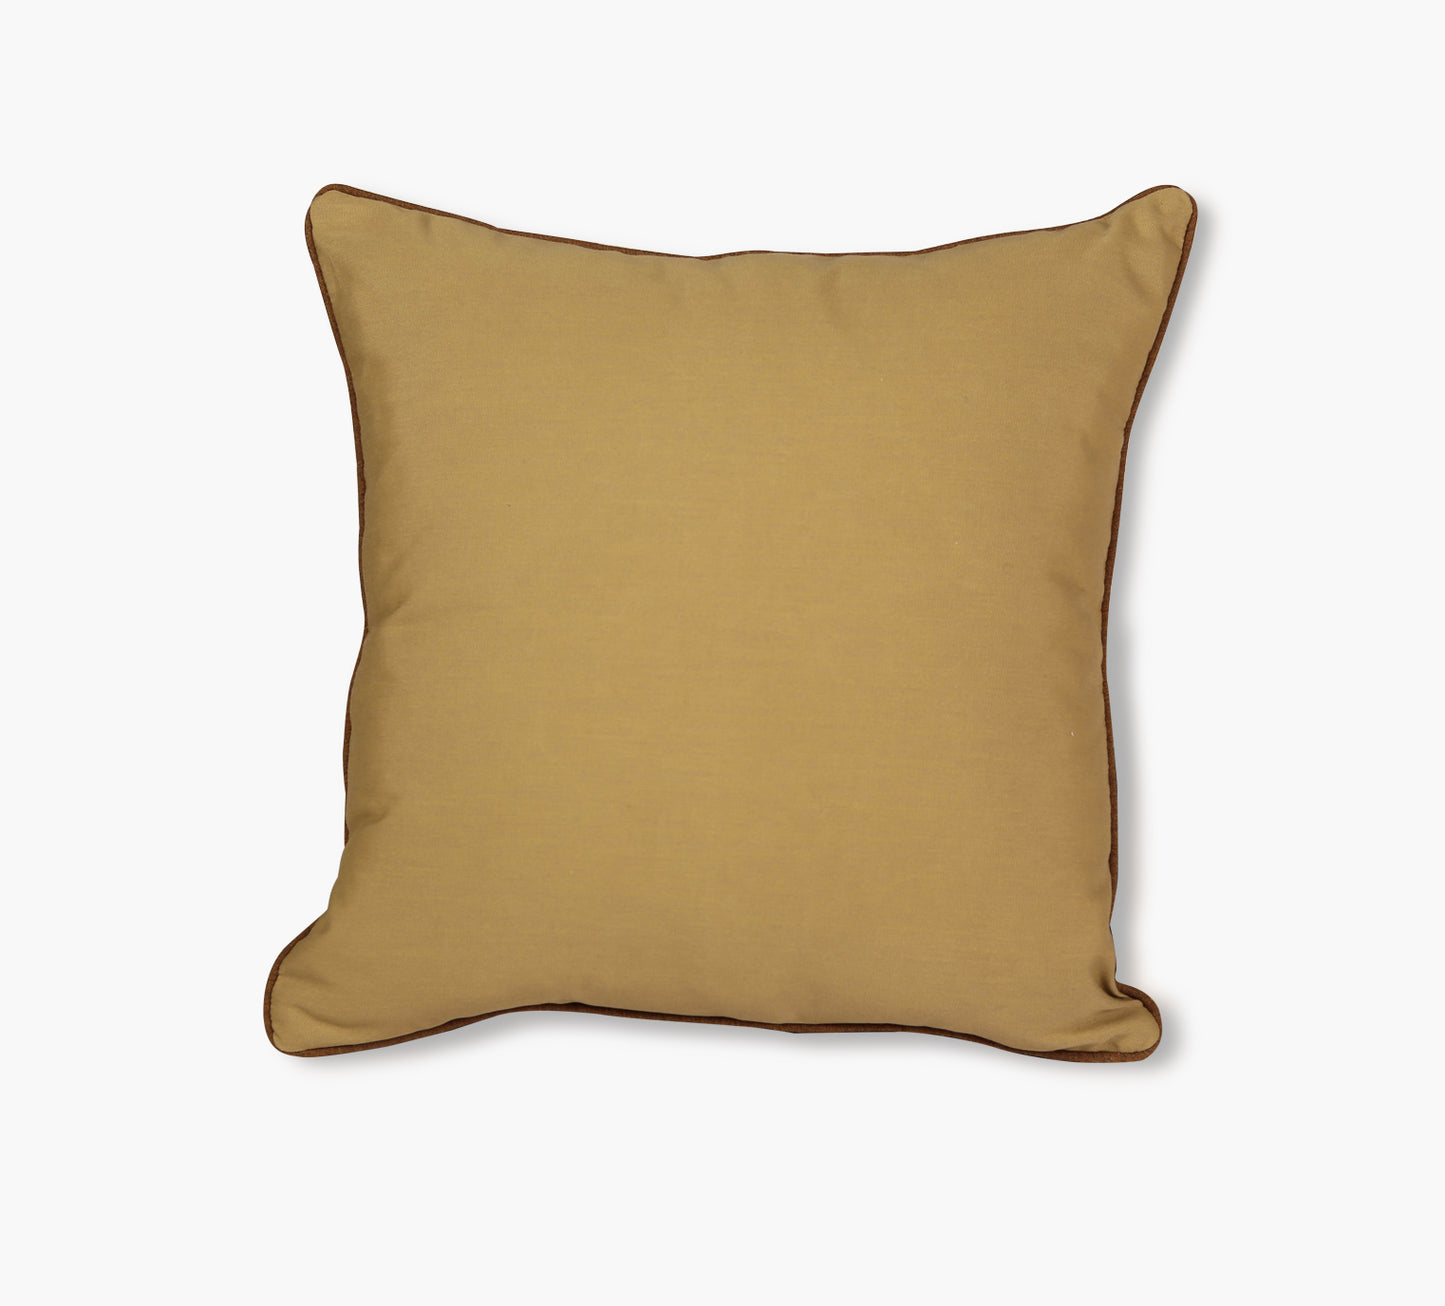 Cherry Dorset Brass Reversible Outdoor Throw Pillow